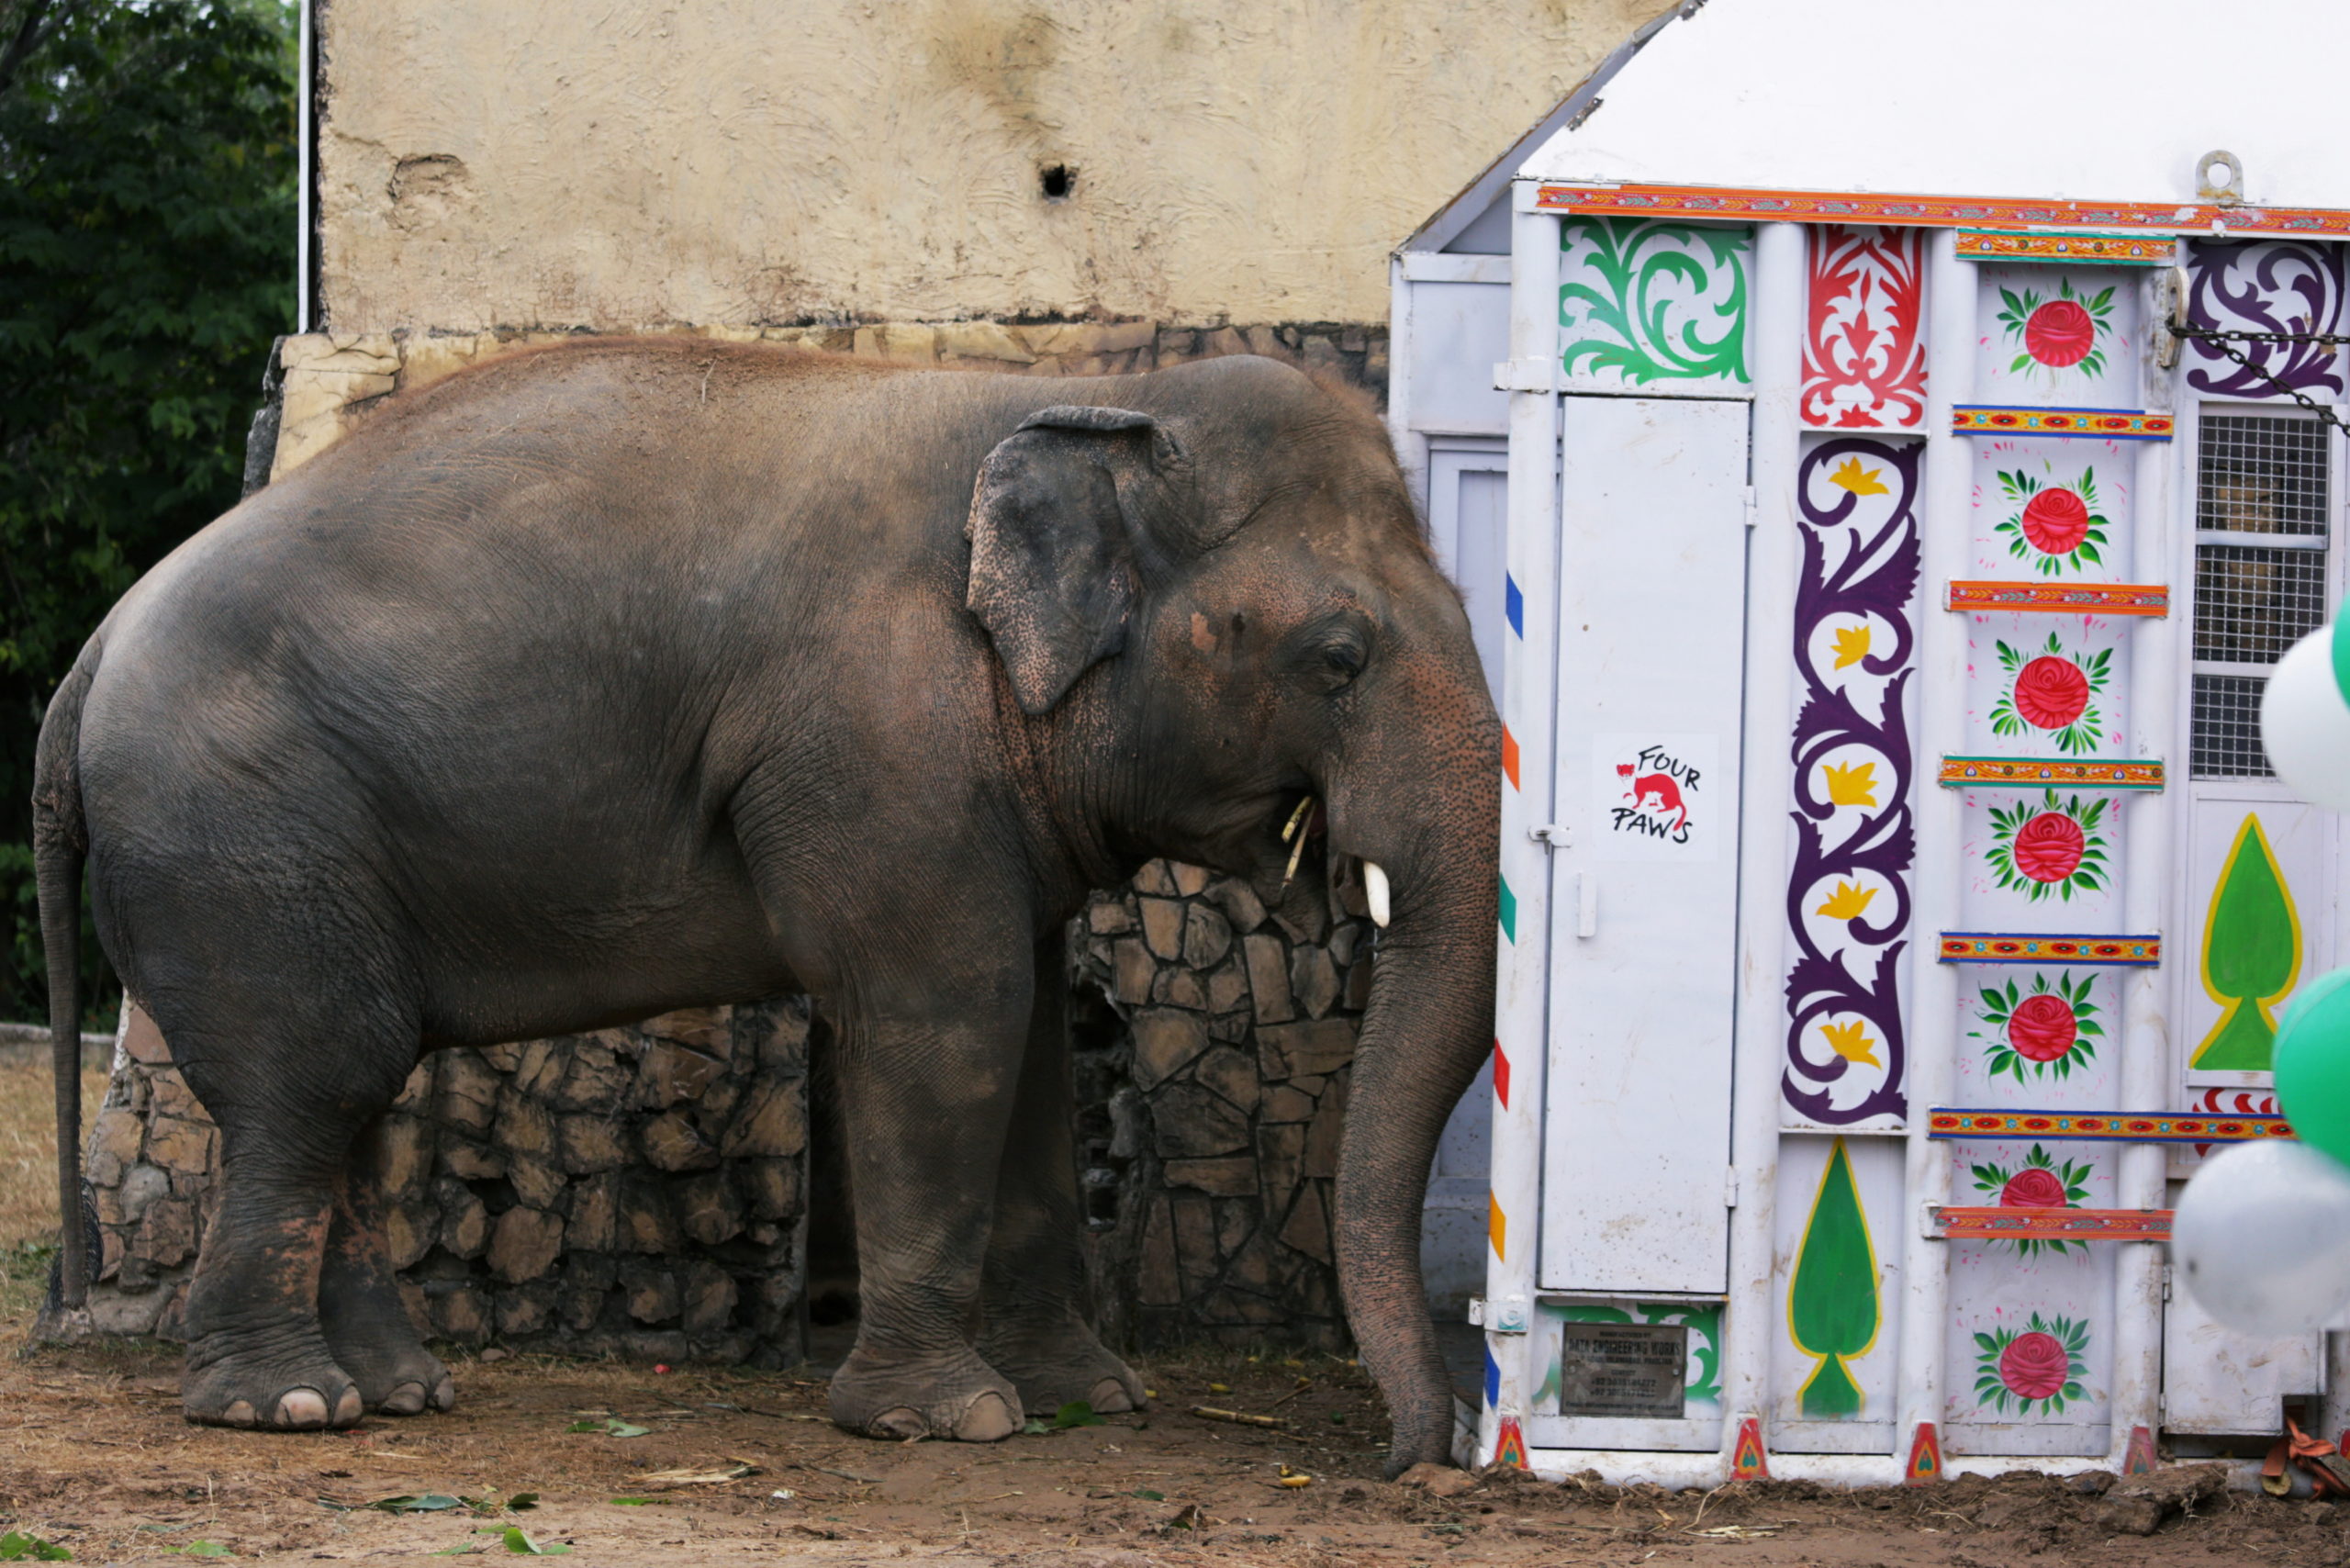 Kaavan elephant